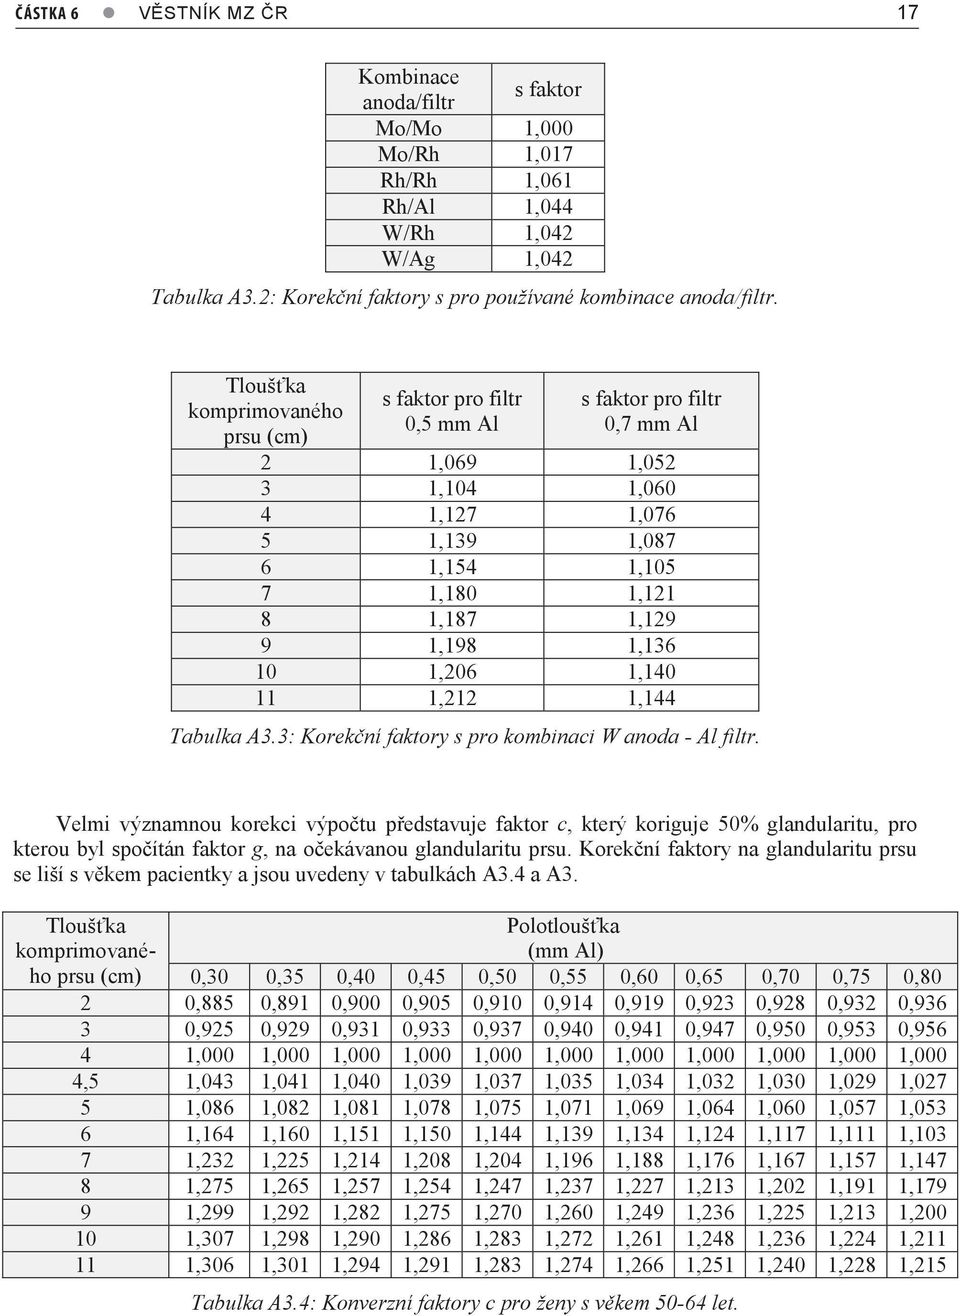 1,136 10 1,206 1,140 11 1,212 1,144 Tabulka A3.3: Korekční faktory s pro kombinaci W anoda - Al filtr.